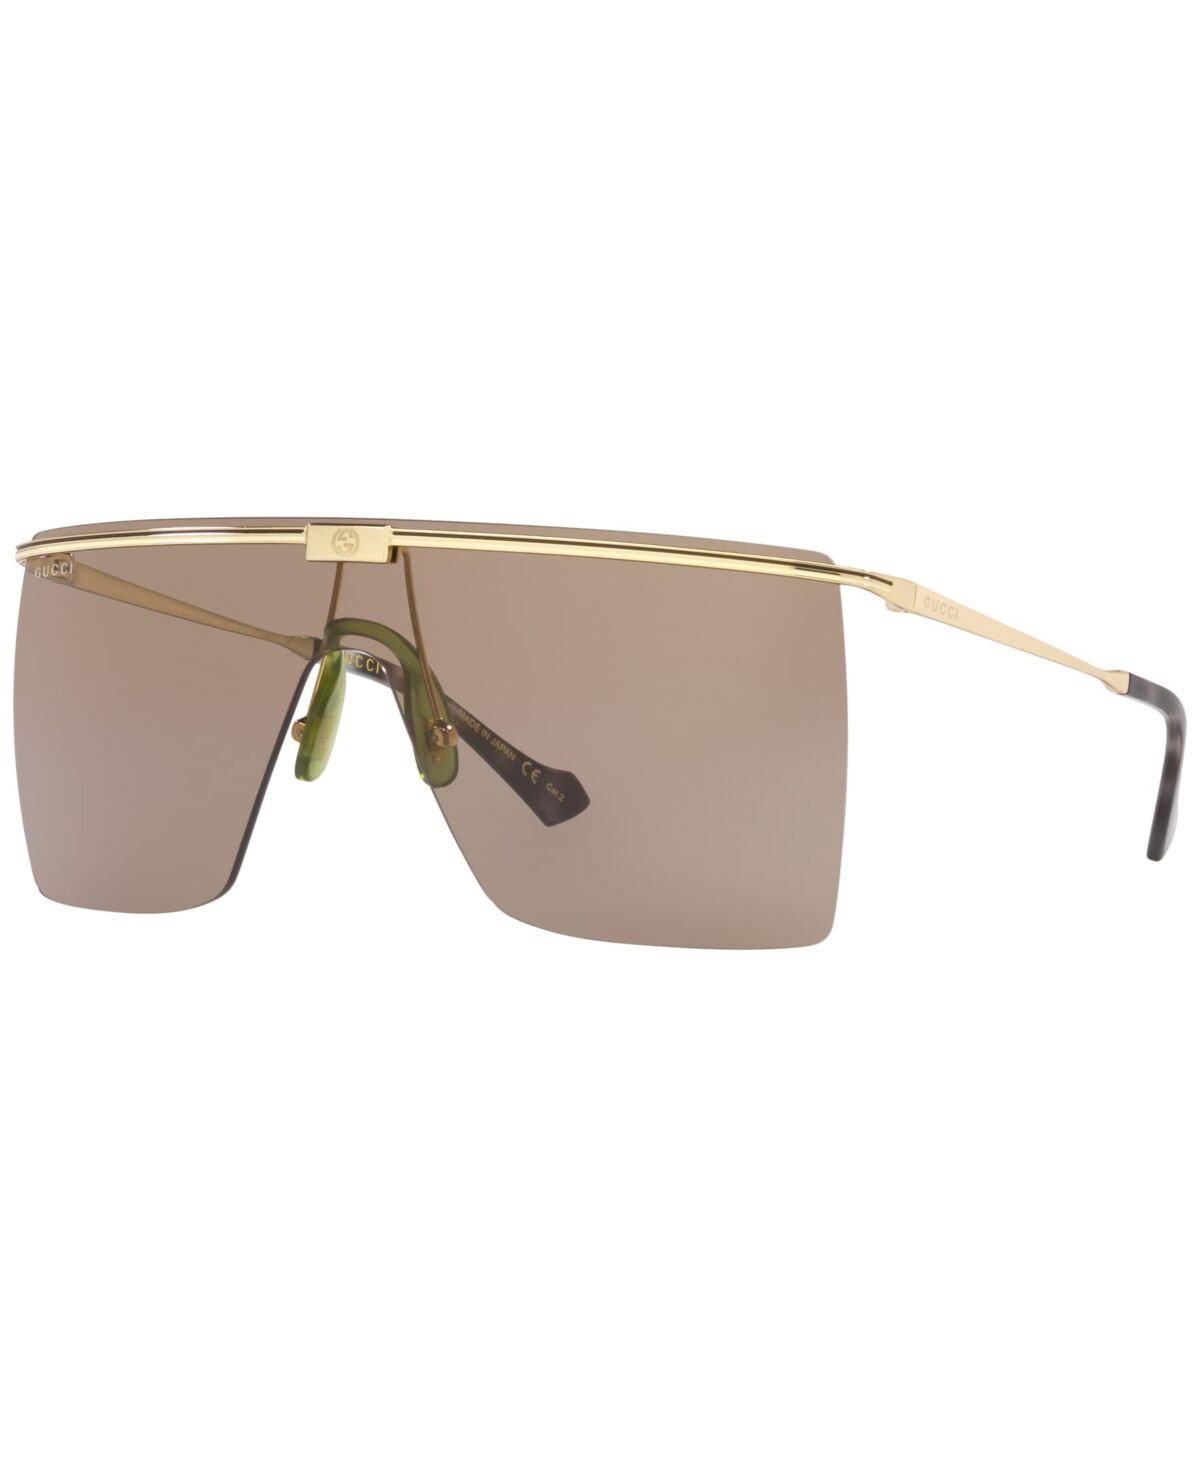 Gucci Men's Sunglasses, GG1096S 90 - Gold-Tone